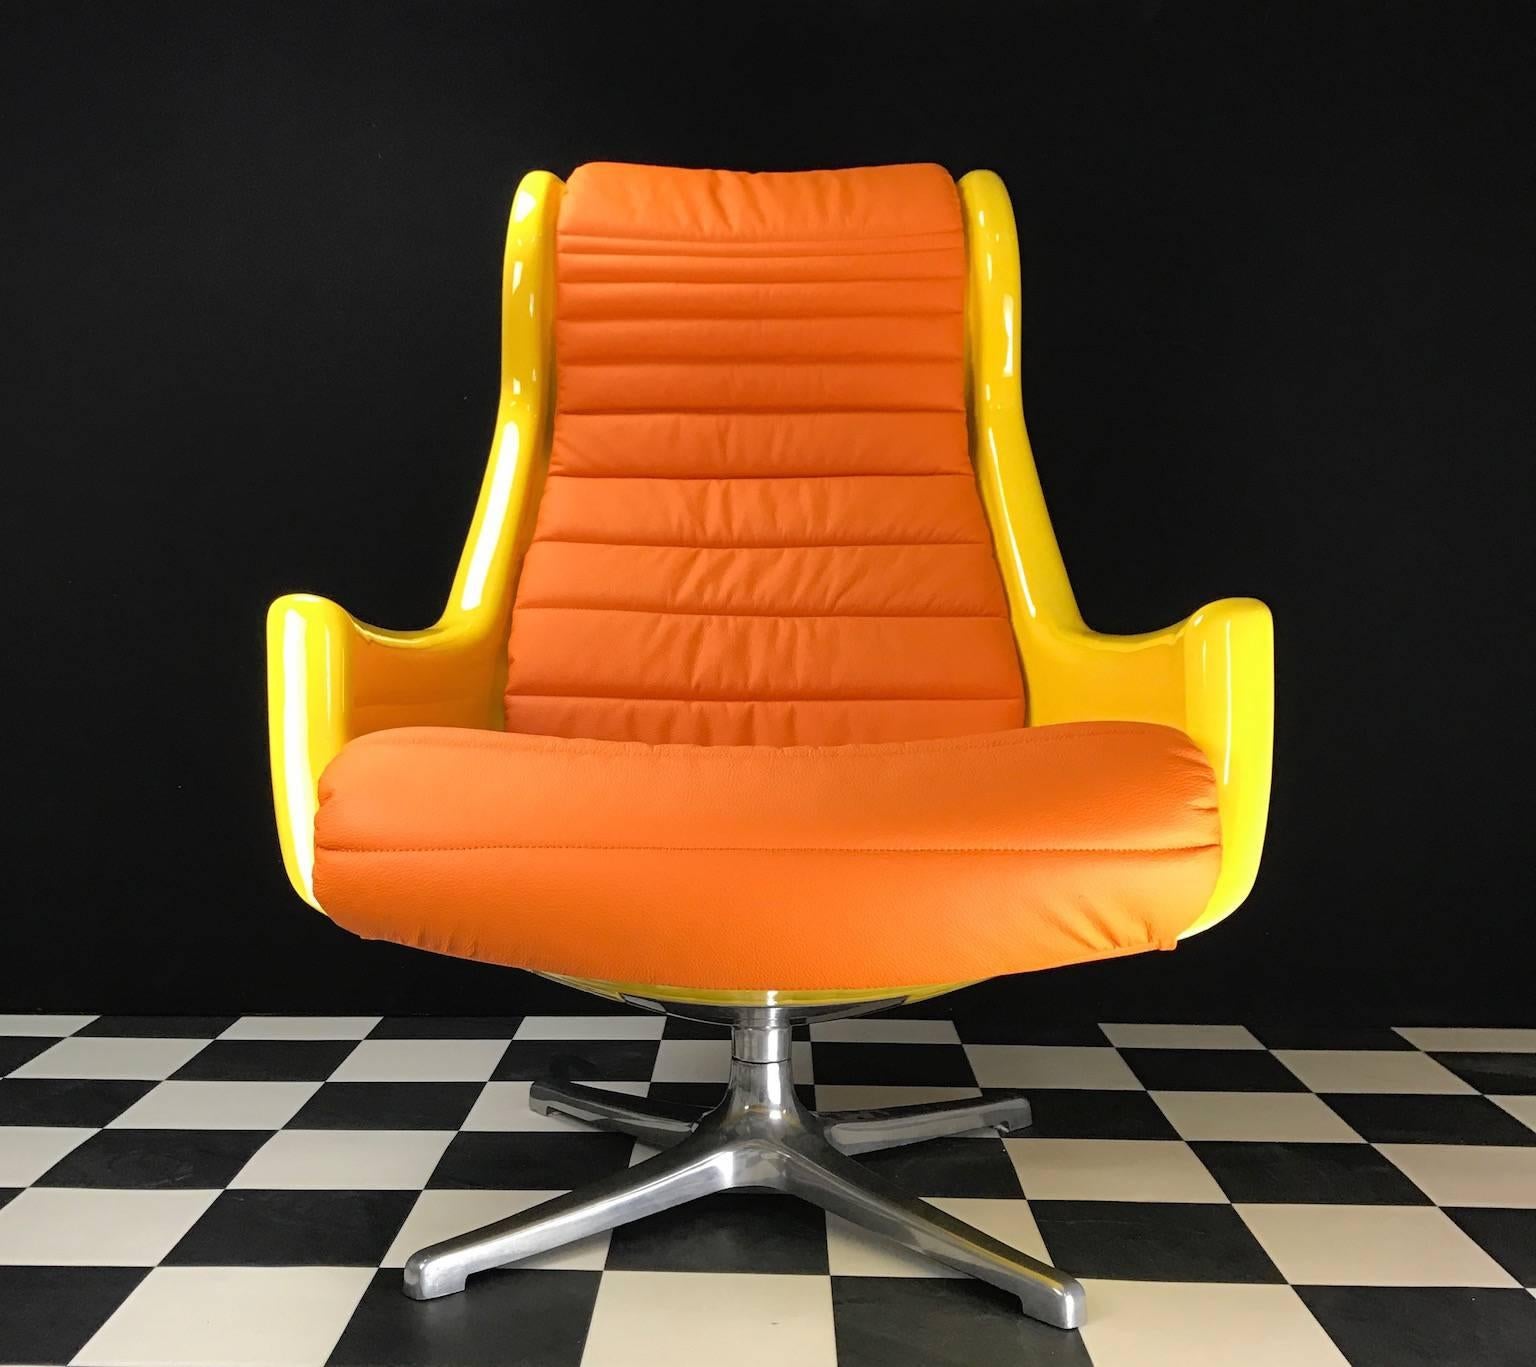 Produit entre 1970 et 1979 par Alf Svensson et Yngve Sandström pour la société suédoise DUX.

Ce fauteuil pivotant unique a été entièrement rénové avec de nouveaux coussins et cinq couches de peinture de course Alfa Romeo.

Un magnifique cuir